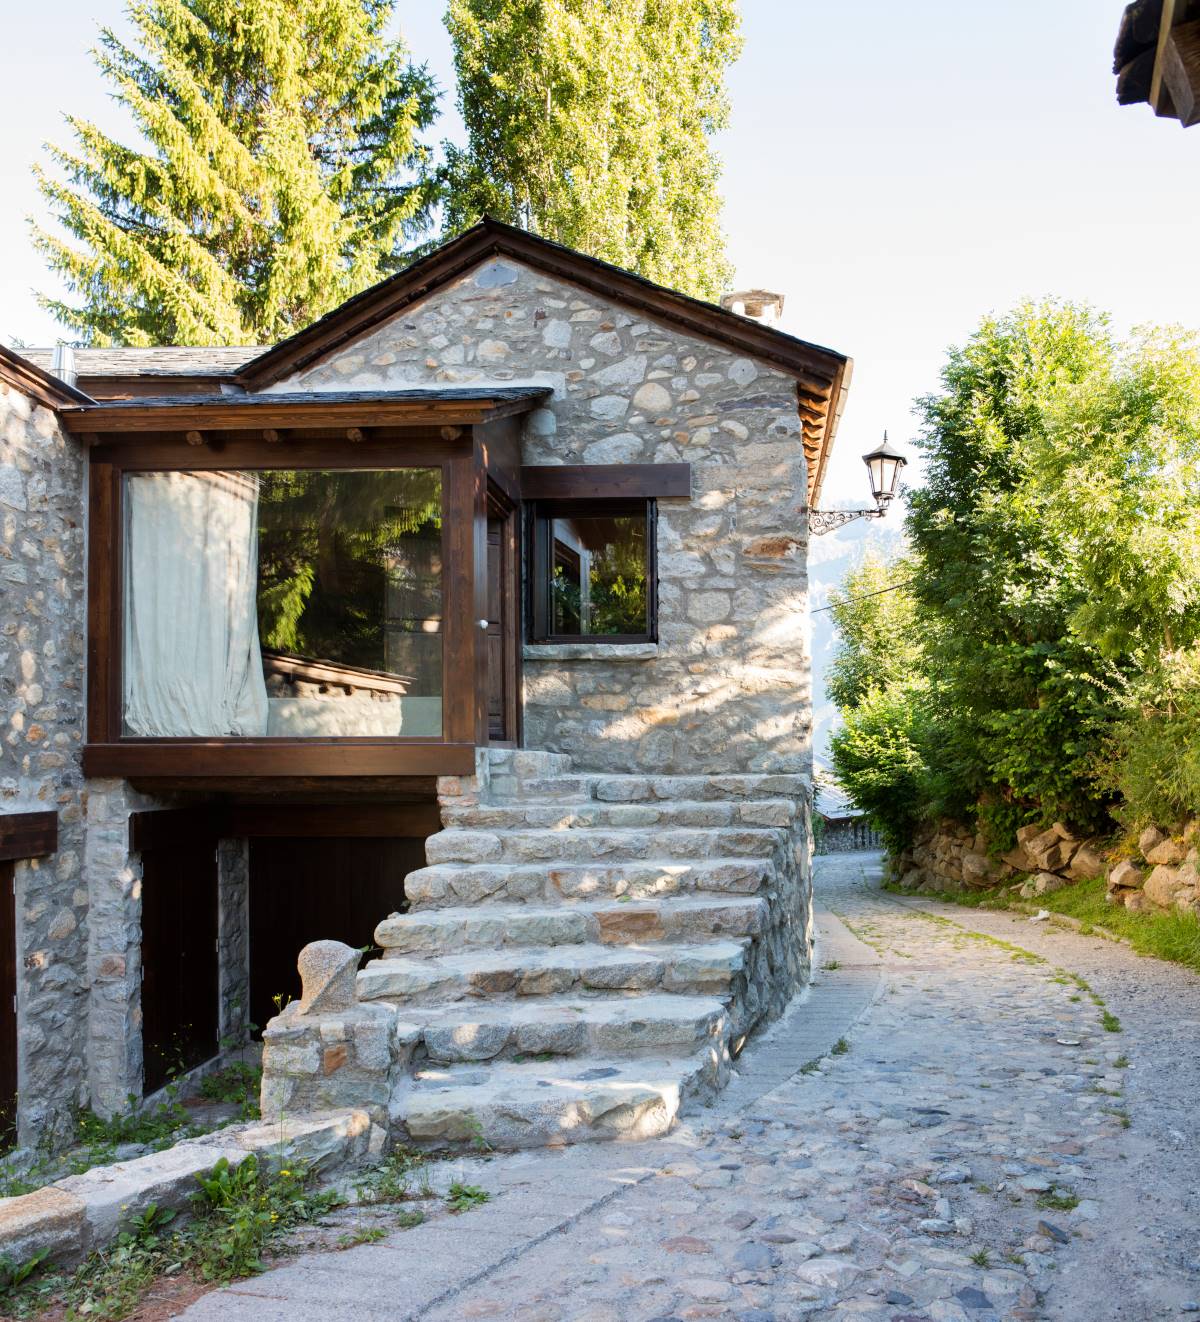 Casa rústica, escaleras de piedra y ventanal 00443287_O.jpg